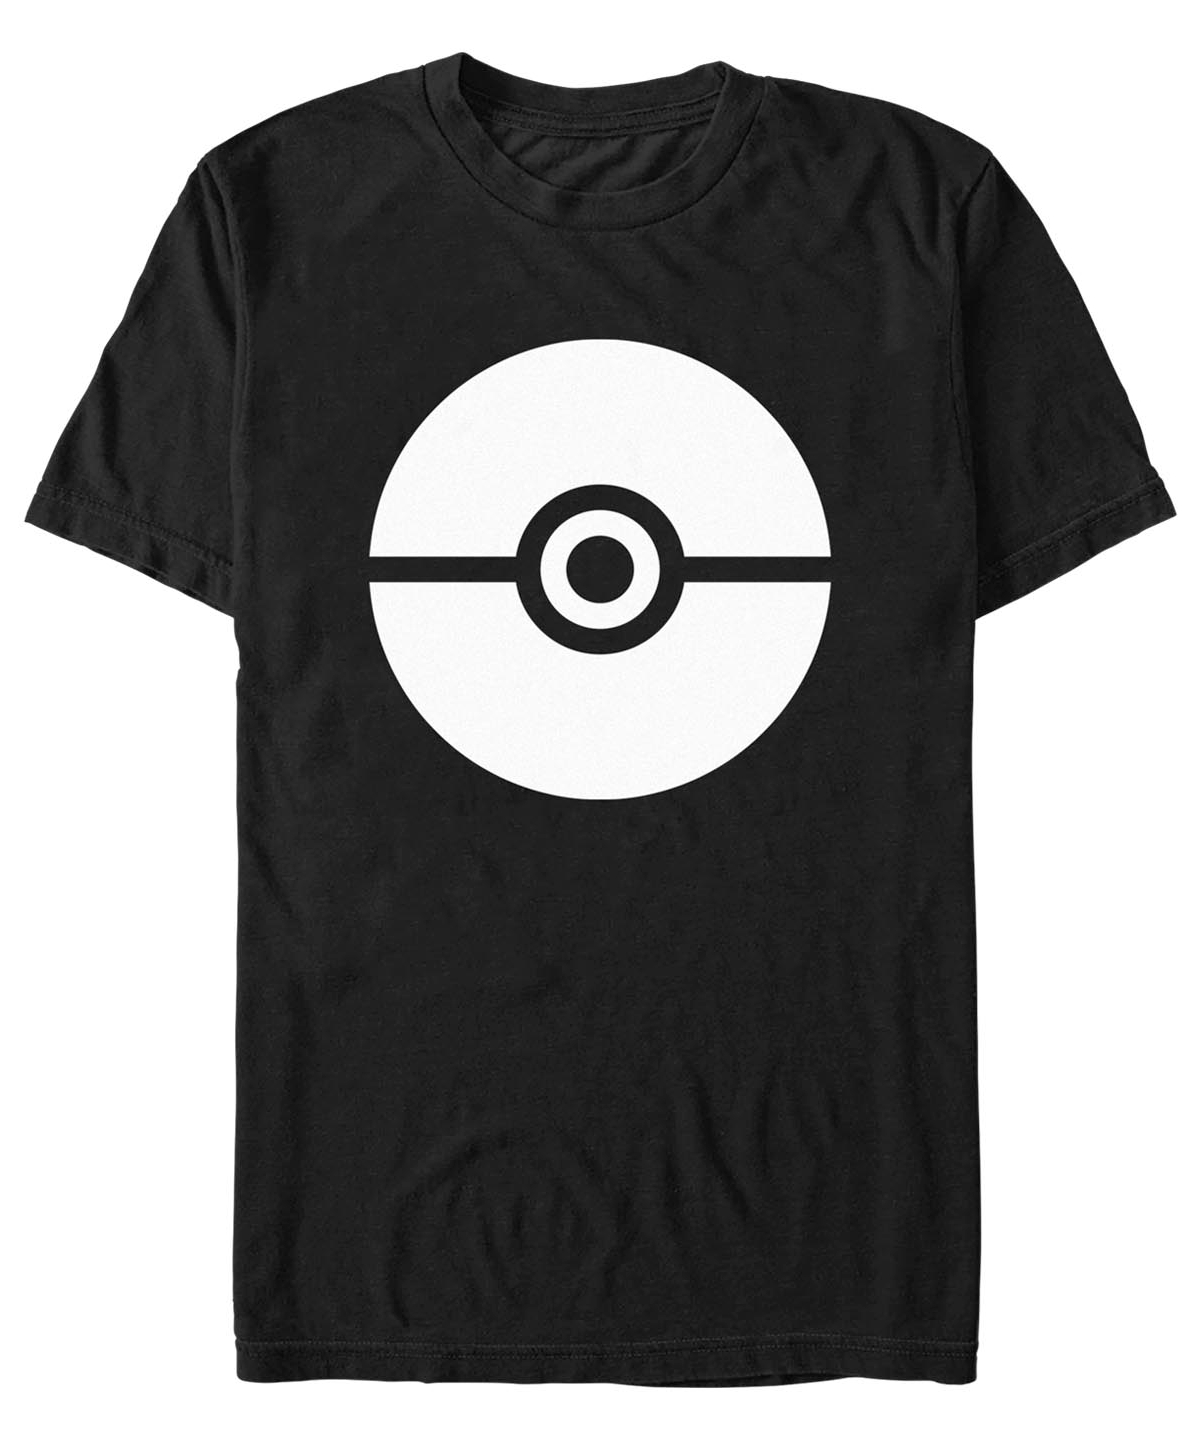 Fifth Sun Men's Pokemon Trainer Short Sleeve T-shirt In Black